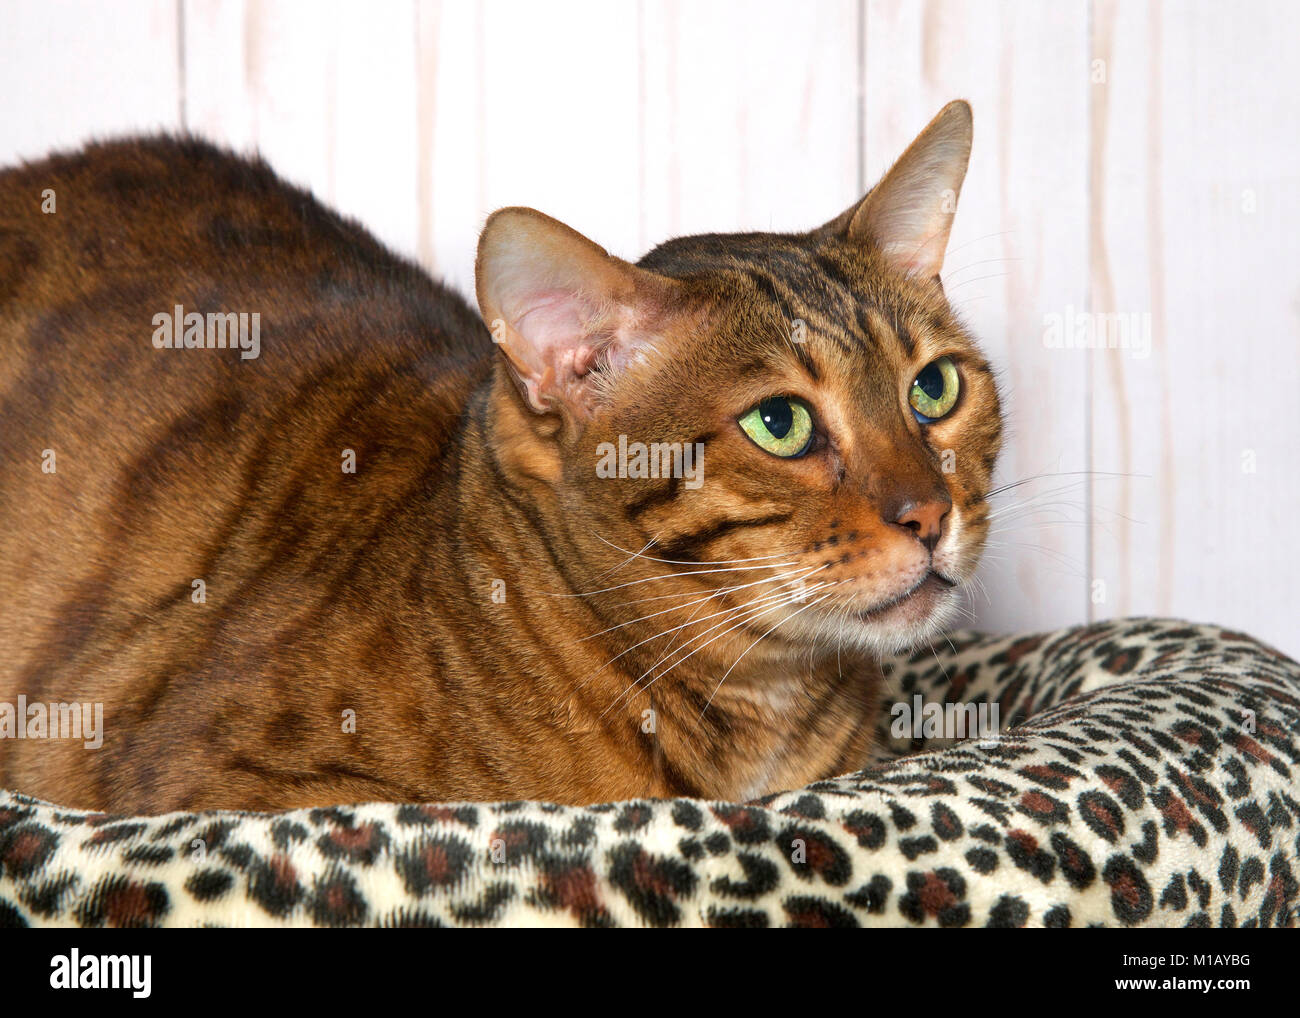 Gatto bengala posa su un ghepardo coperta di stampa con la luce del pannello in legno sfondo a parete. Gli occhi verdi guardando in alto, vista di profilo Foto Stock